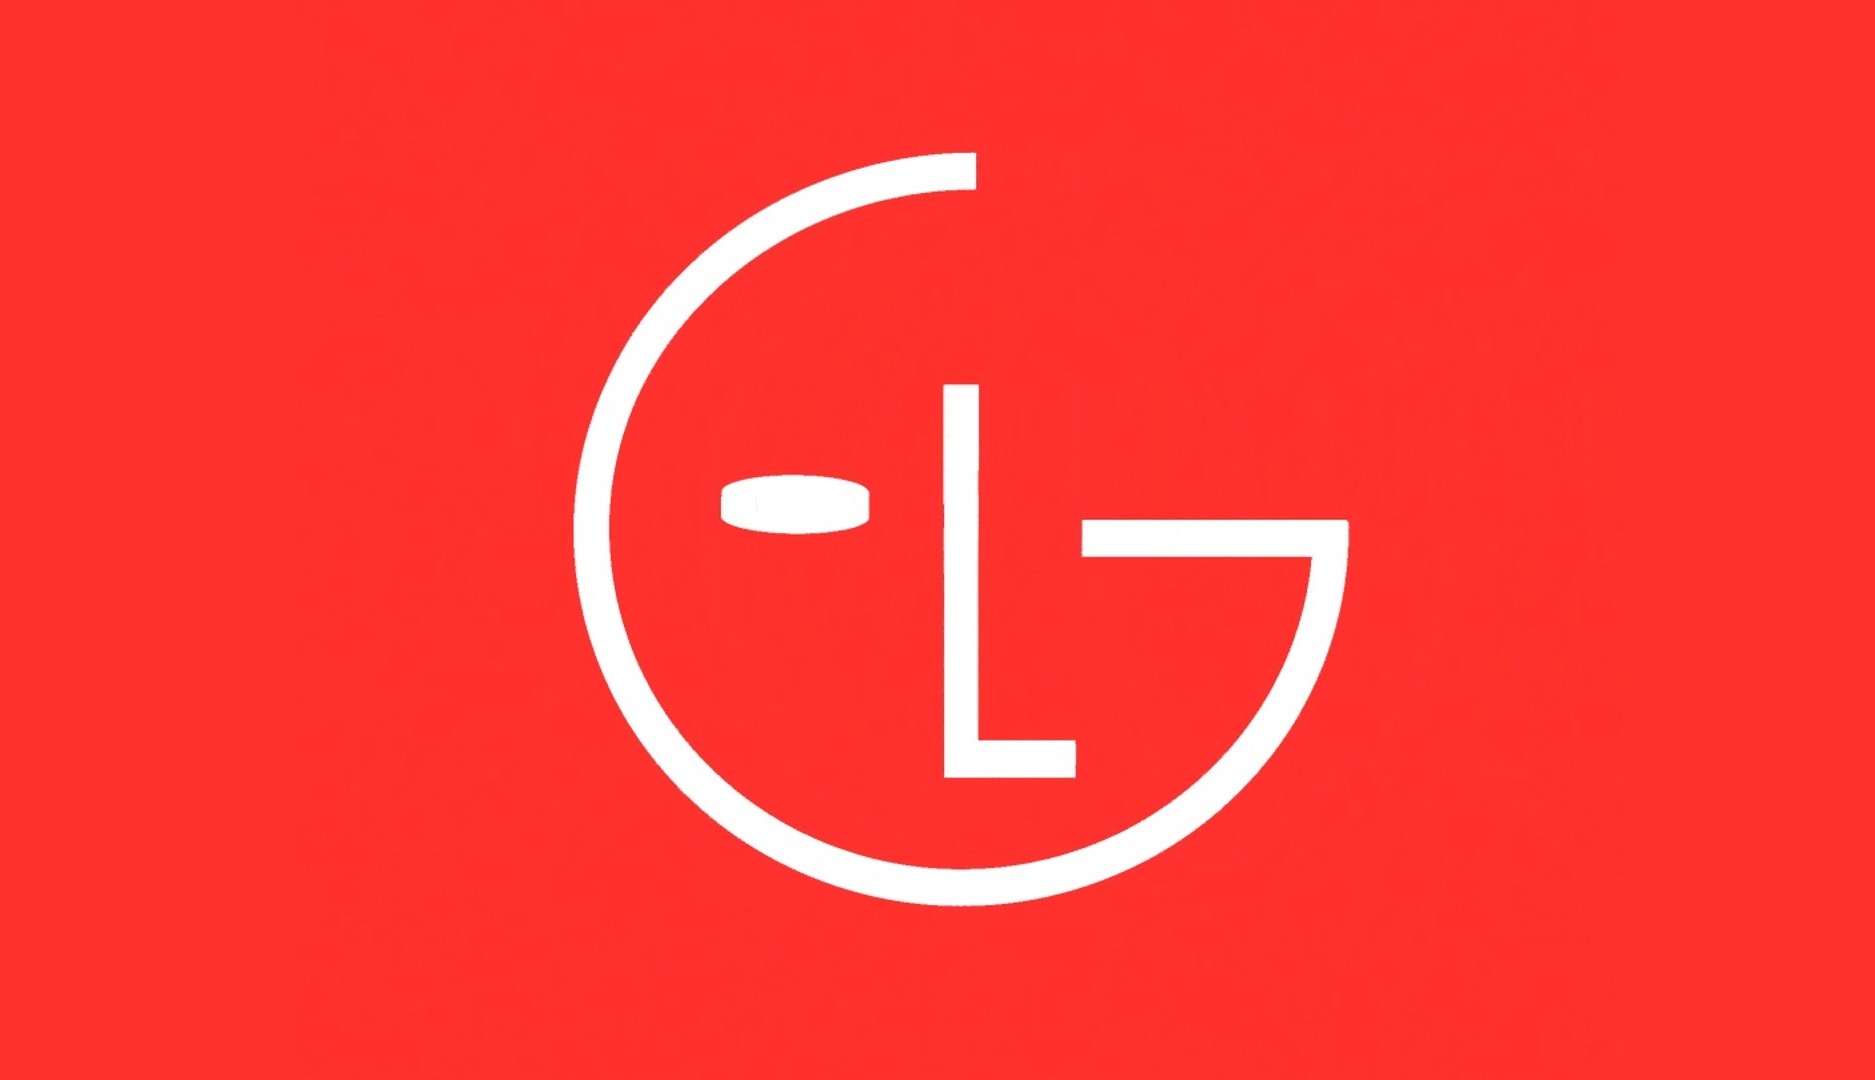 LG anima su logotipo y prioriza su eslogan como parte de la actualización de su identidad visual